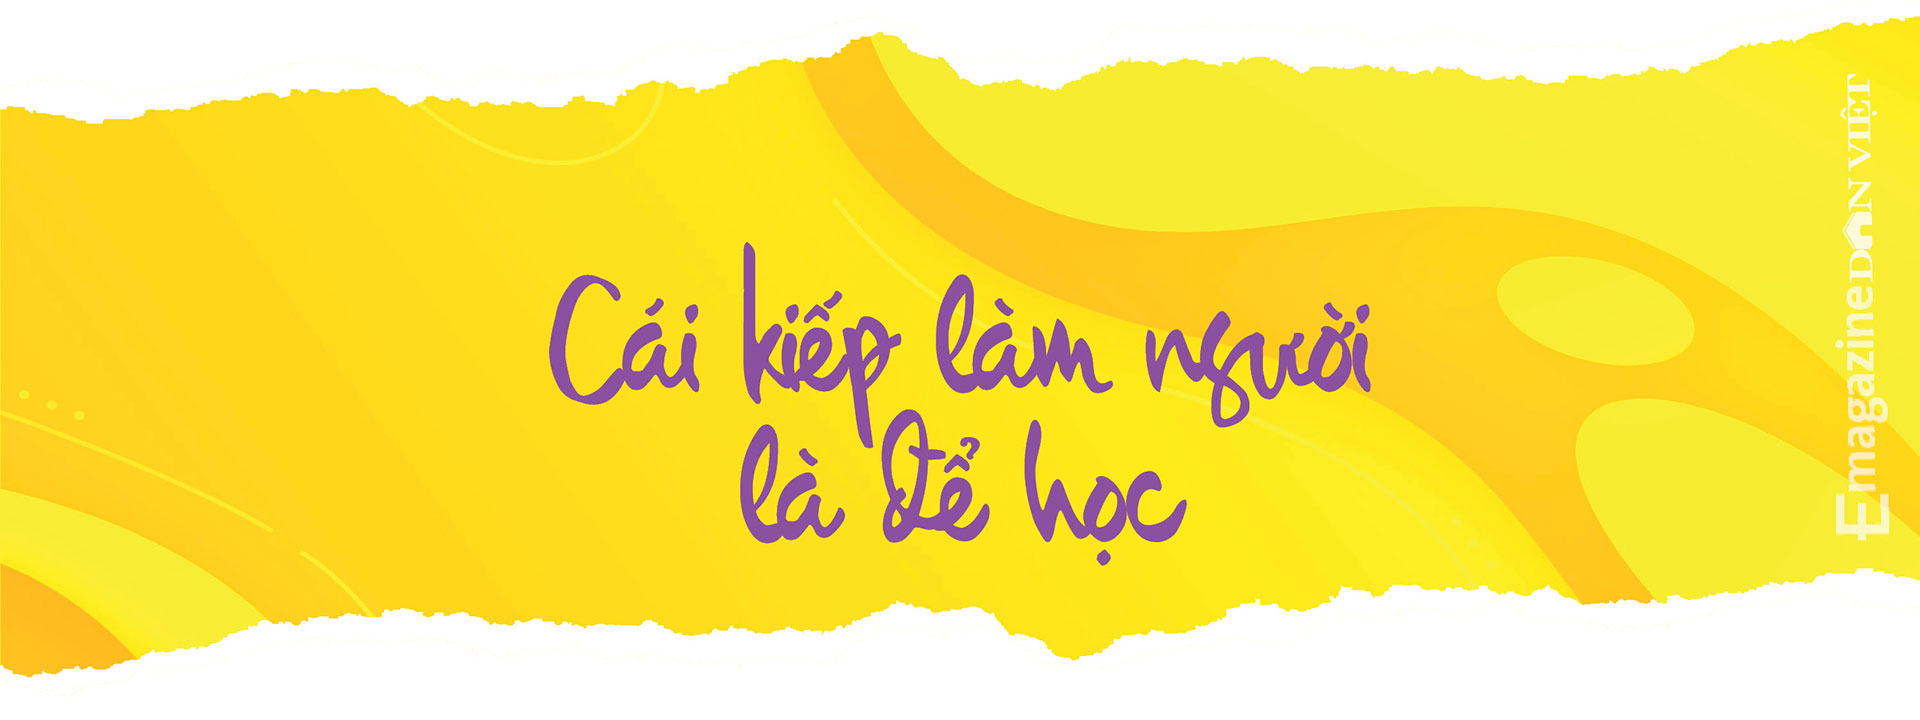 Chuyên gia về bạo lực giới và gia đình Nguyễn Vân Anh: Tình yêu là một môn học - Ảnh 19.